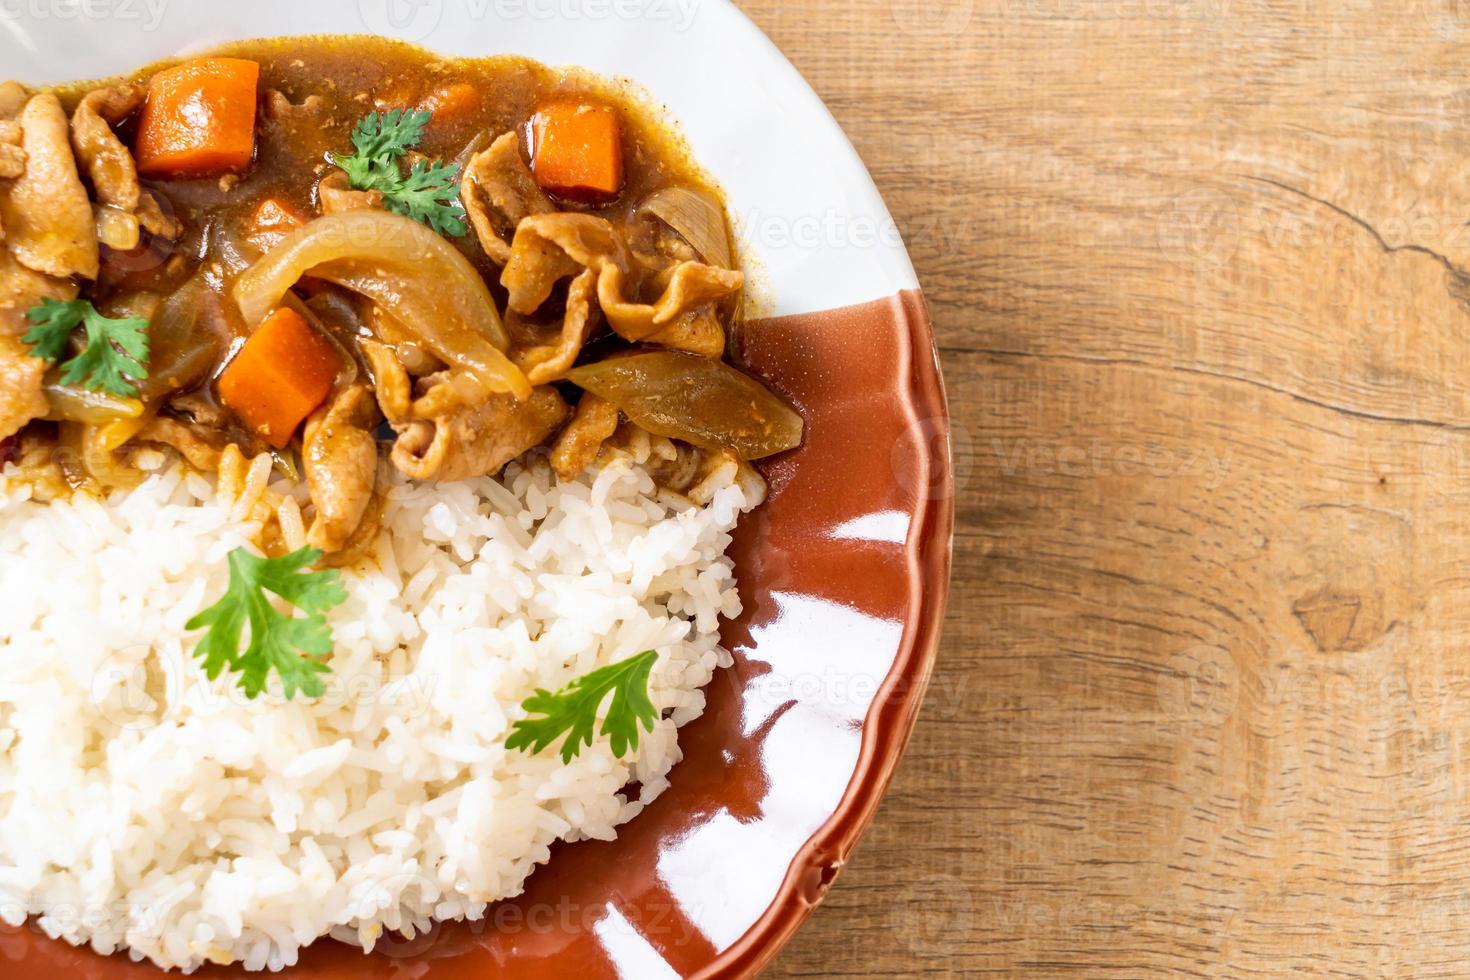 riso giapponese al curry con fettine di maiale, carota e cipolle foto